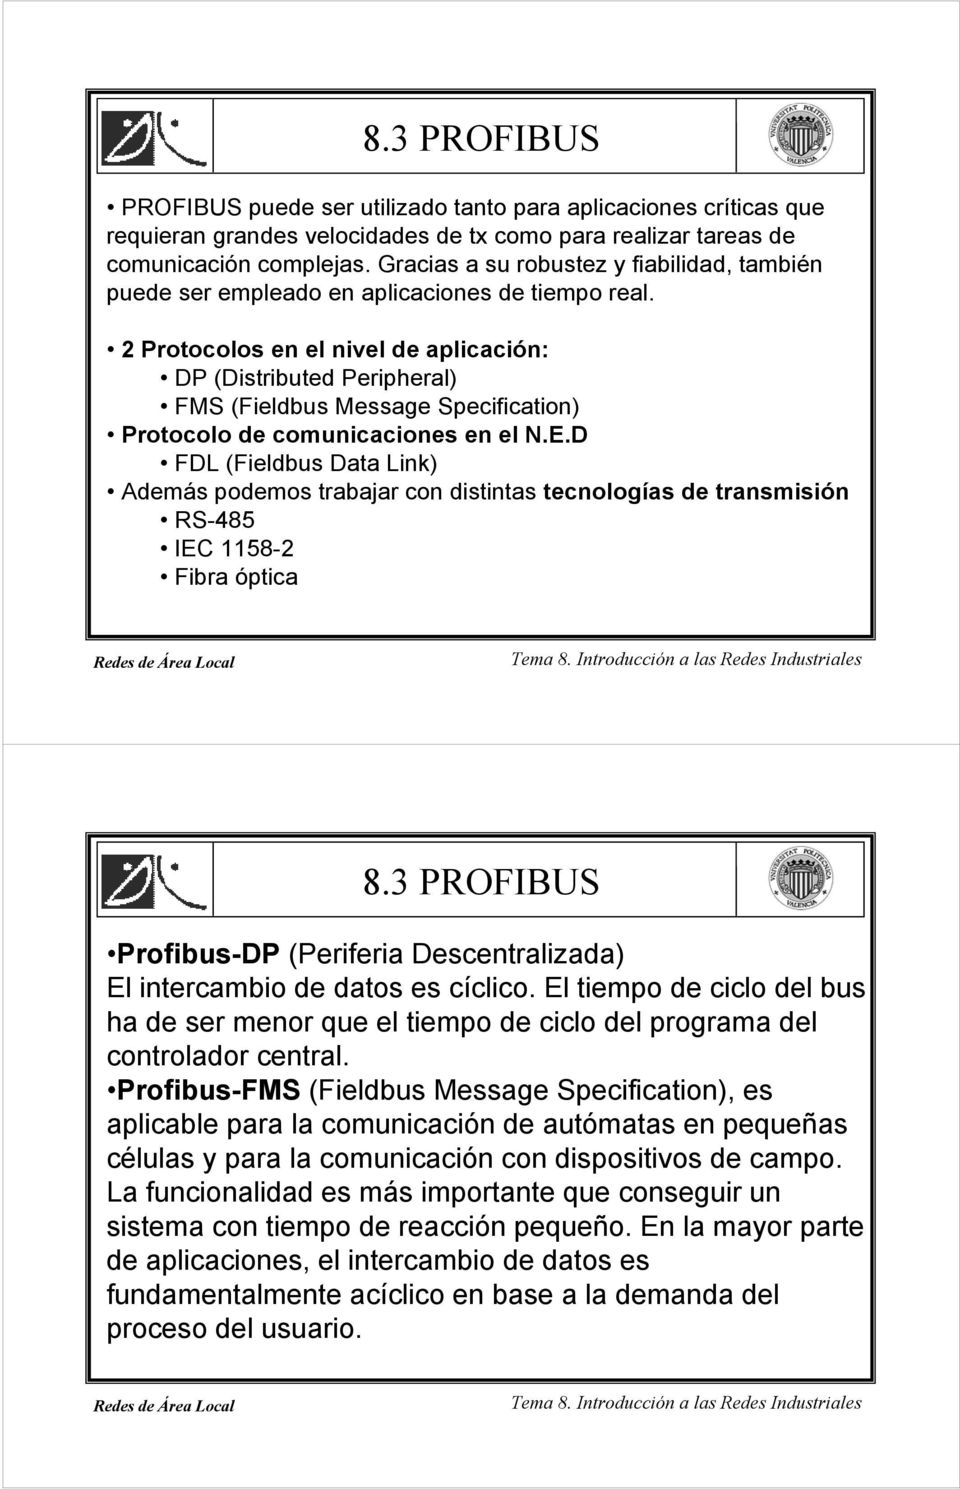 2 Protocolos en el nivel de aplicación: DP (Distributed Peripheral) FMS (Fieldbus Message Specification) Protocolo de comunicaciones en el N.E.